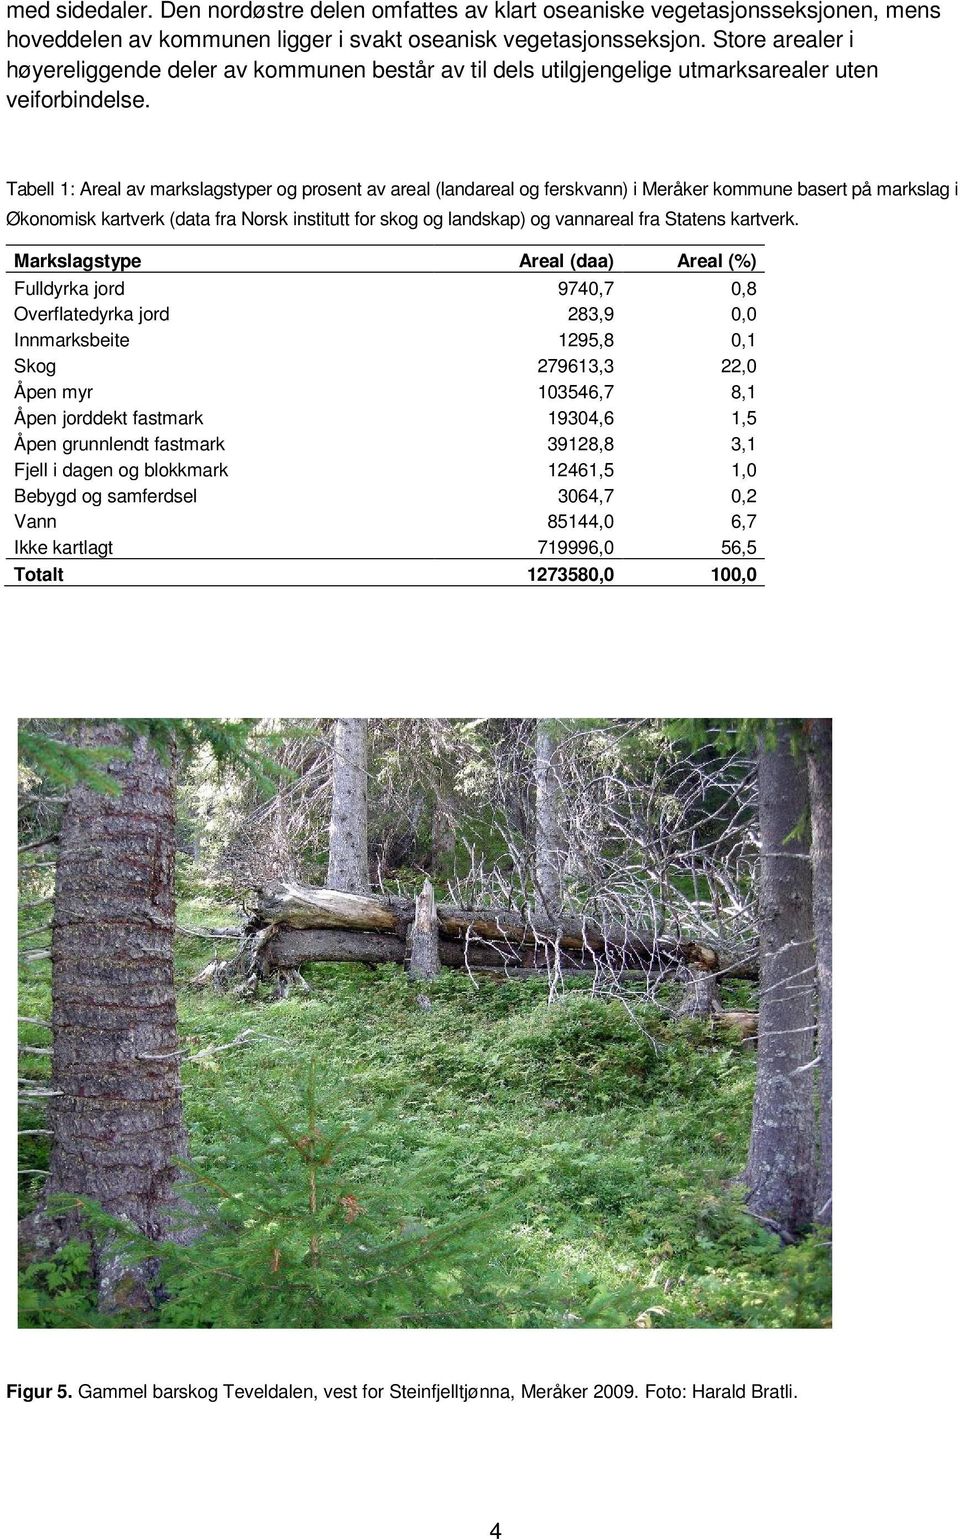 Tabell 1: Areal av markslagstyper og prosent av areal (landareal og ferskvann) i Meråker kommune basert på markslag i Økonomisk kartverk (data fra Norsk institutt for skog og landskap) og vannareal